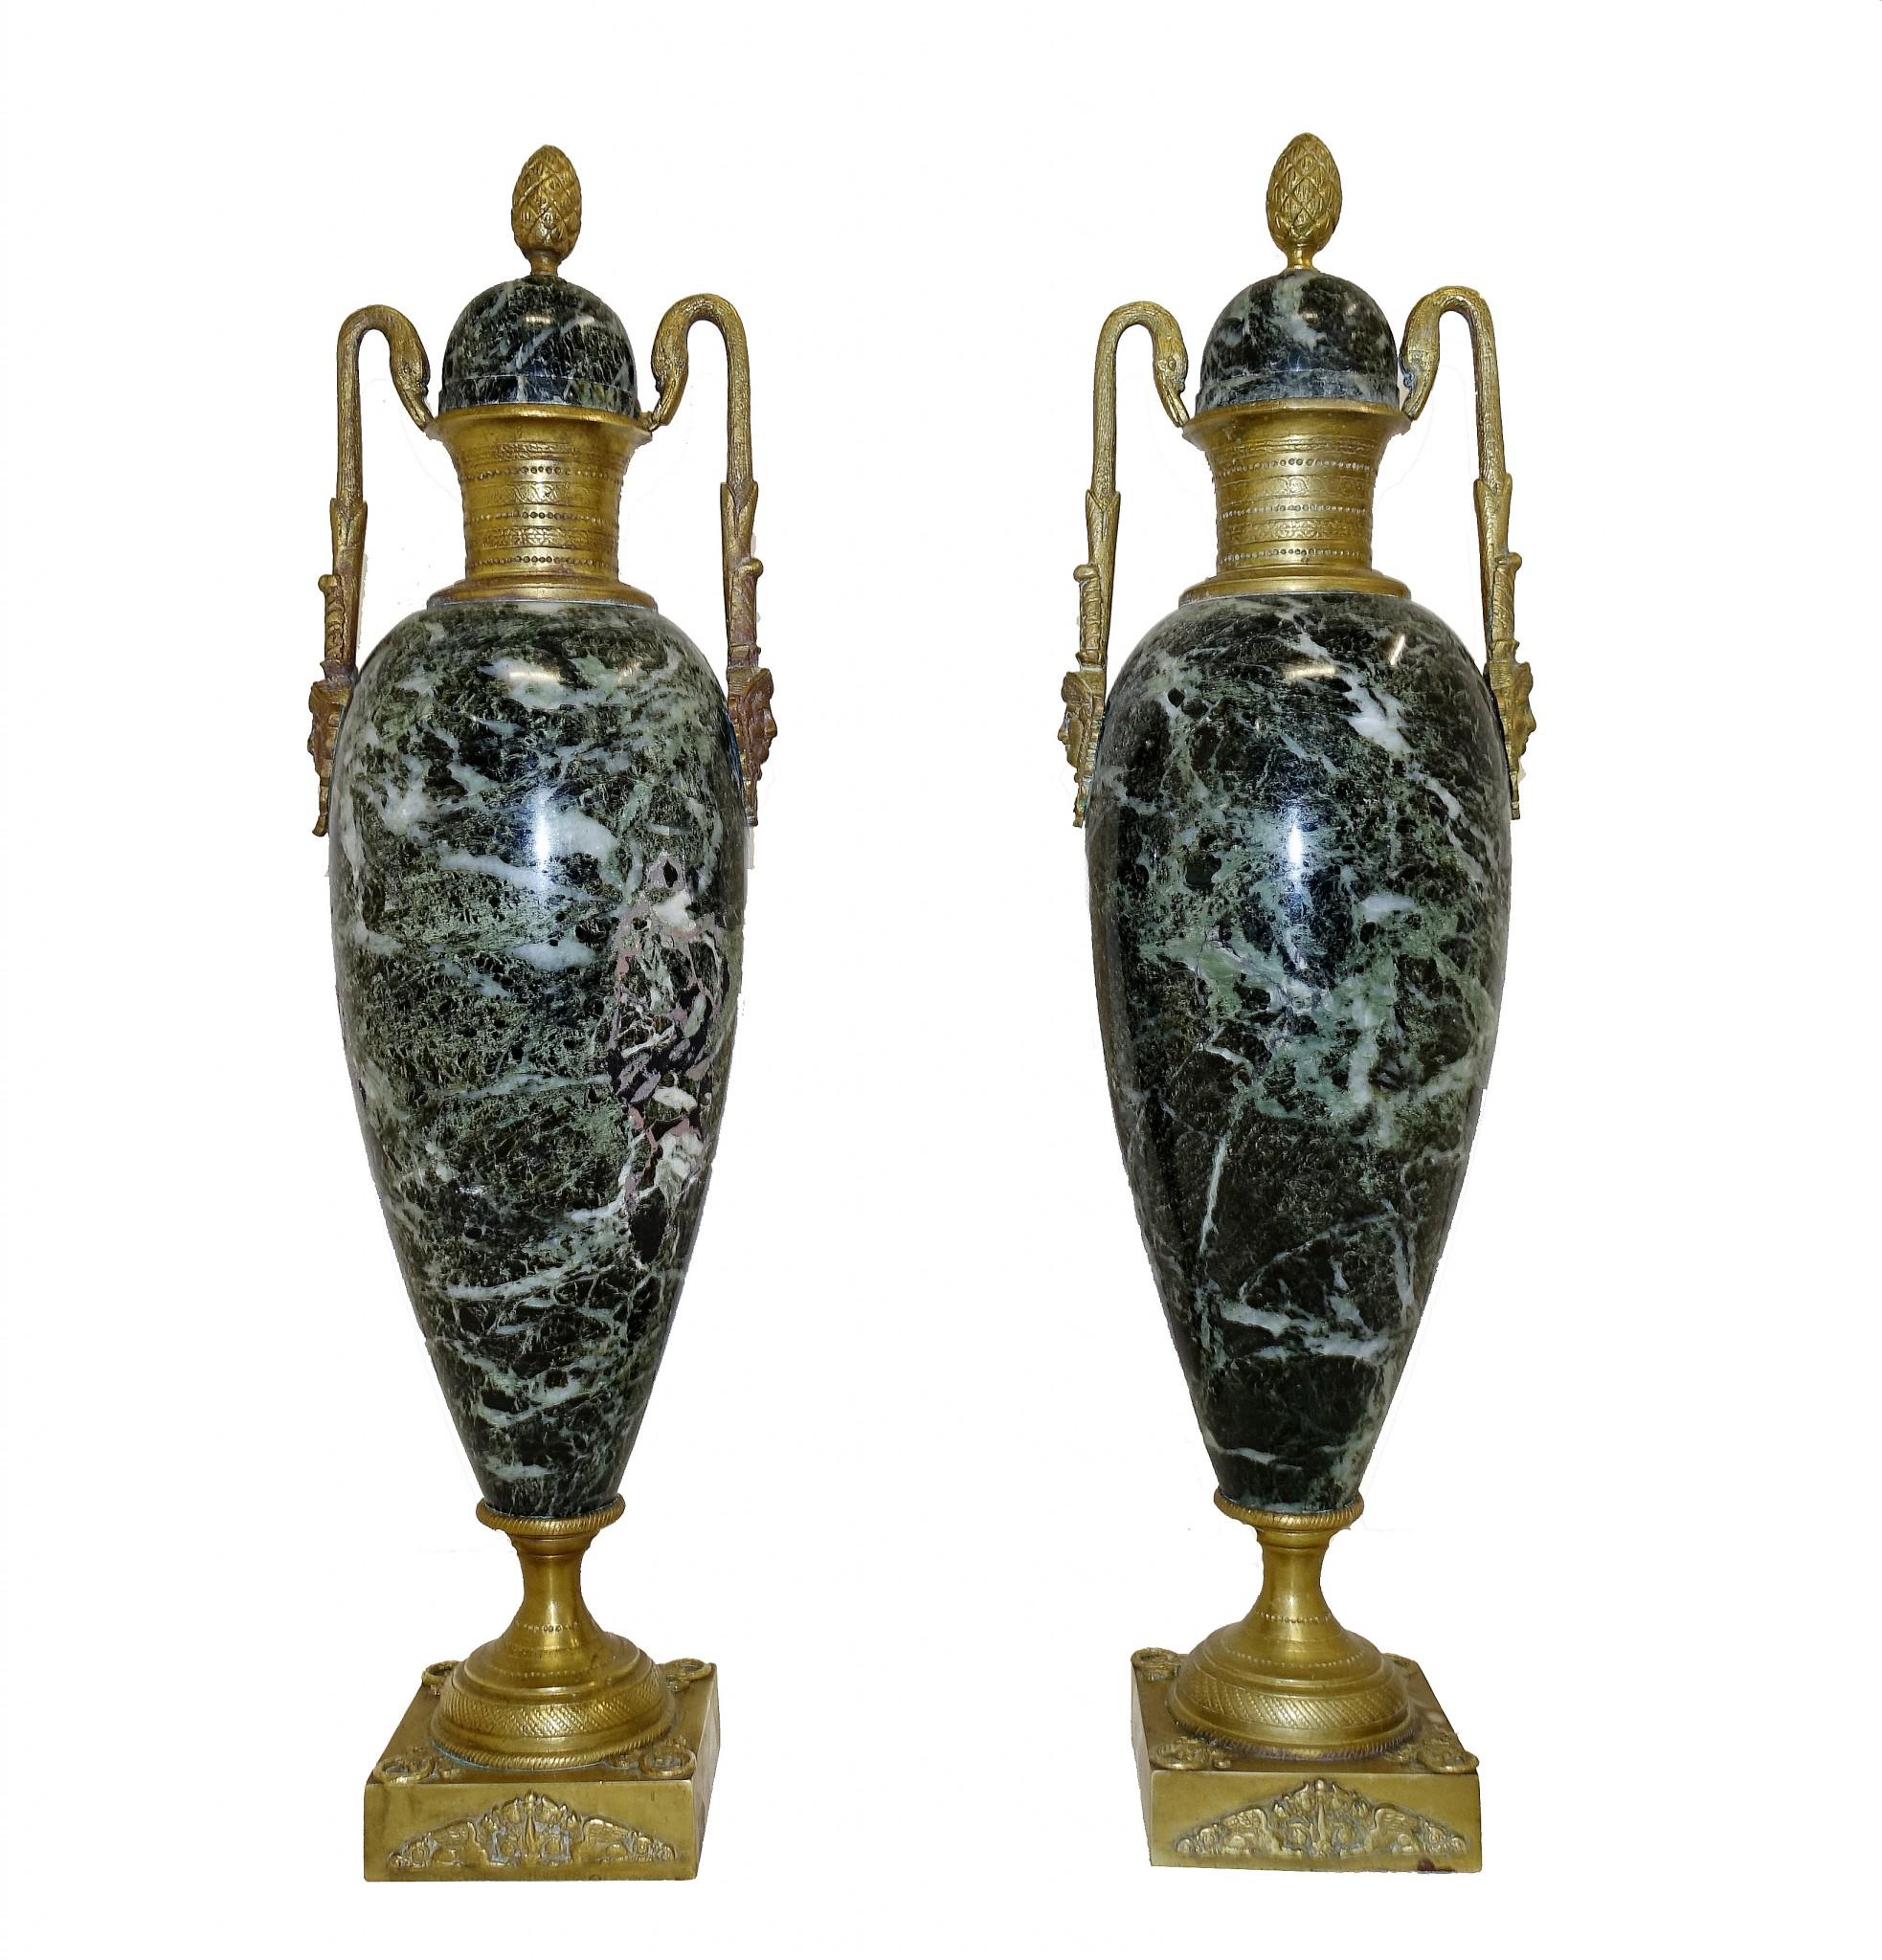 Elegantes Paar französischer antiker Kassetten oder Marmorurnen
Tolles Paar in klassischer Amphora-Form, sehr dekorativ und sammelwürdig
Mit originalen Ormolu-Beschlägen, darunter Ananas-Finials und Schwanenhalsgriffe
CIRCA 1880 bei diesem Paar im